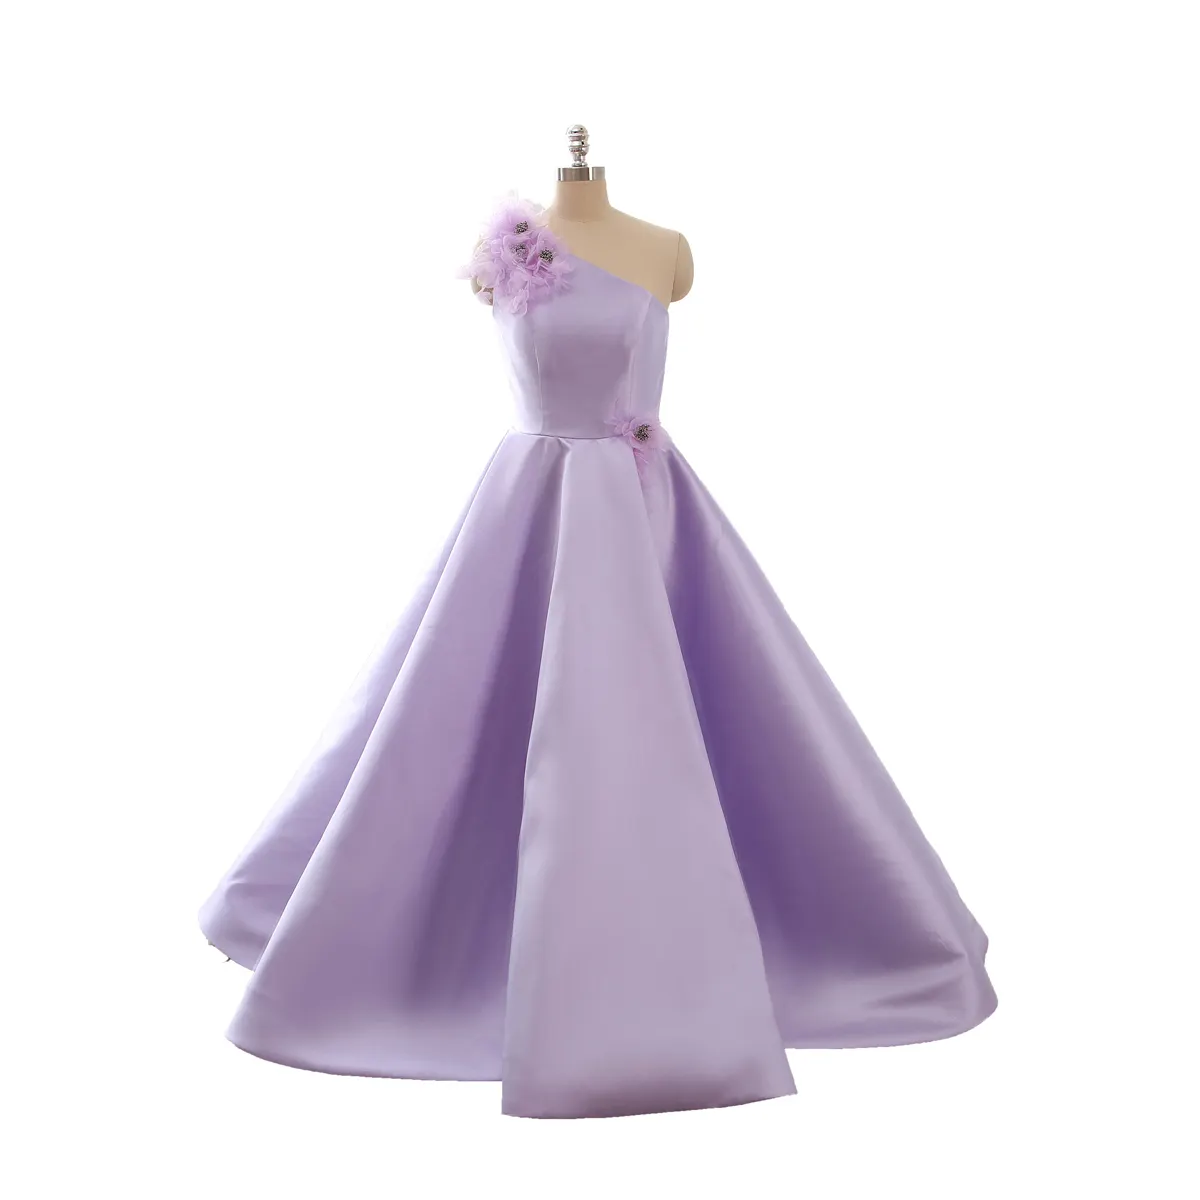 פופולרי סגול מיקאדו/סאטן רצפת/קצר אורך מסיבת יום הולדת שמלת ספק של השושבינות שמלת ילד לנכש